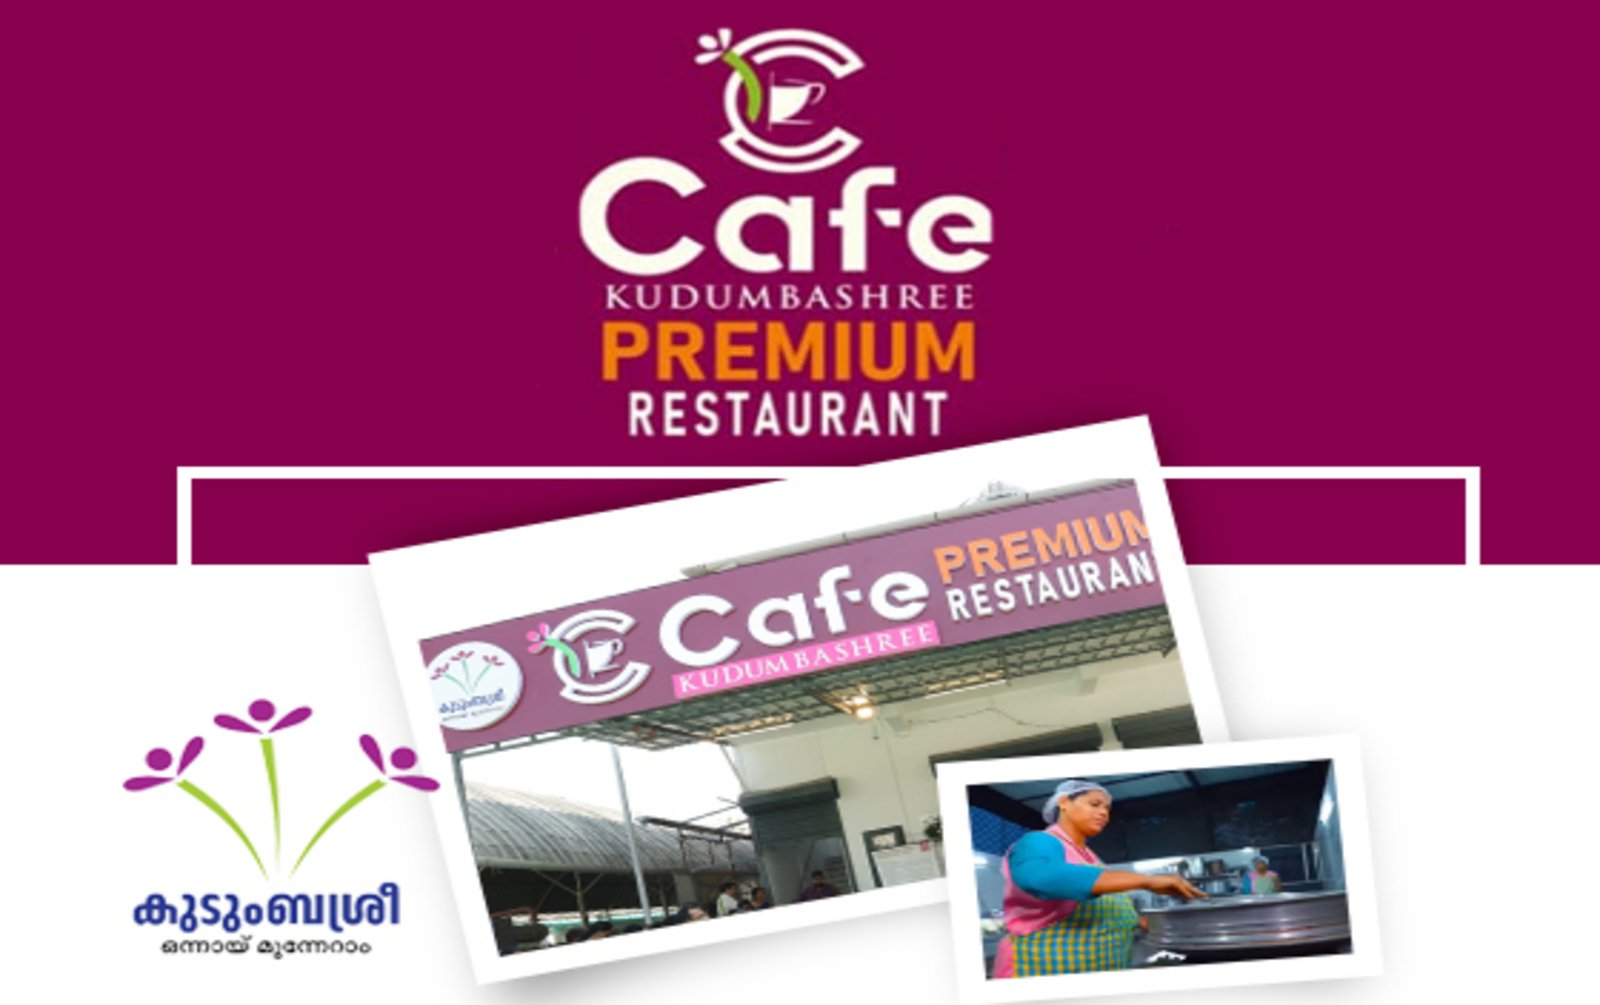 സംരംഭ മേഖലയിൽ മികവു തെളിയിക്കാൻ കഫേ കുടുംബശ്രീ പ്രീമിയം; ആദ്യ കഫേ അങ്കമാലിയിൽ(Cafe Kudumbashree Premium to demonstrate excellence in the field of enterprise; At first cafe Angamaly)